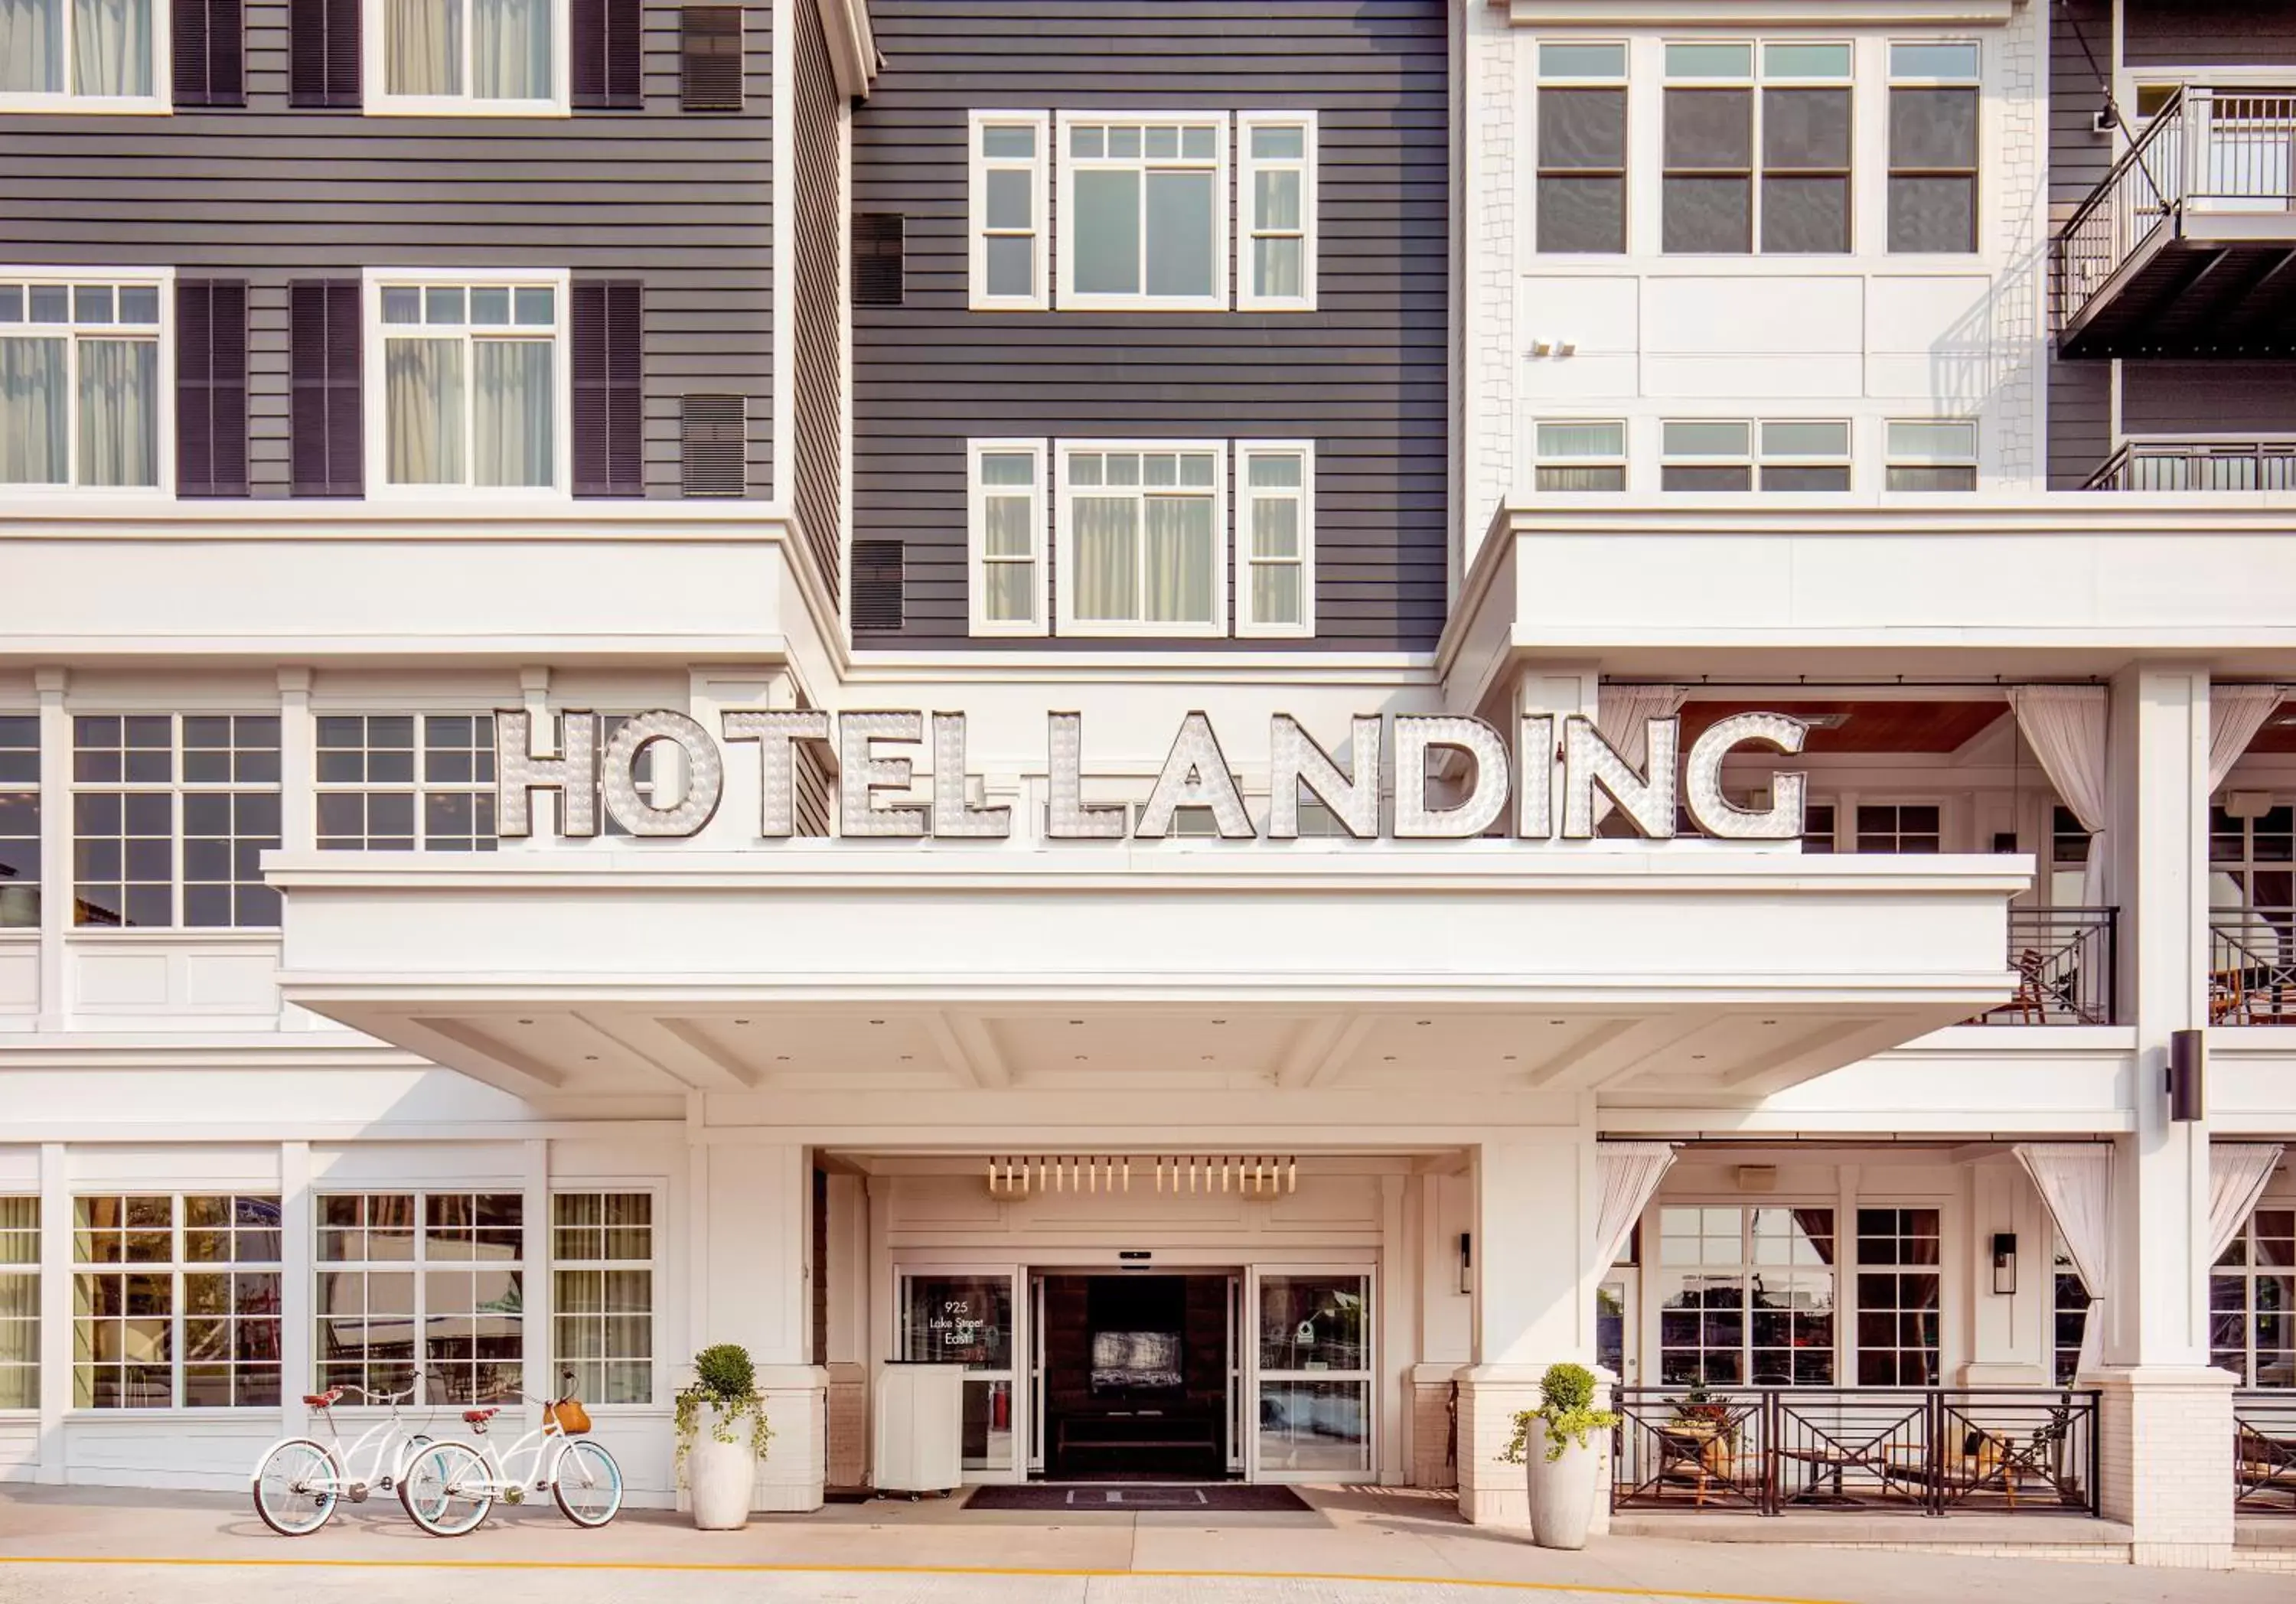 Facade/entrance in The Hotel Landing